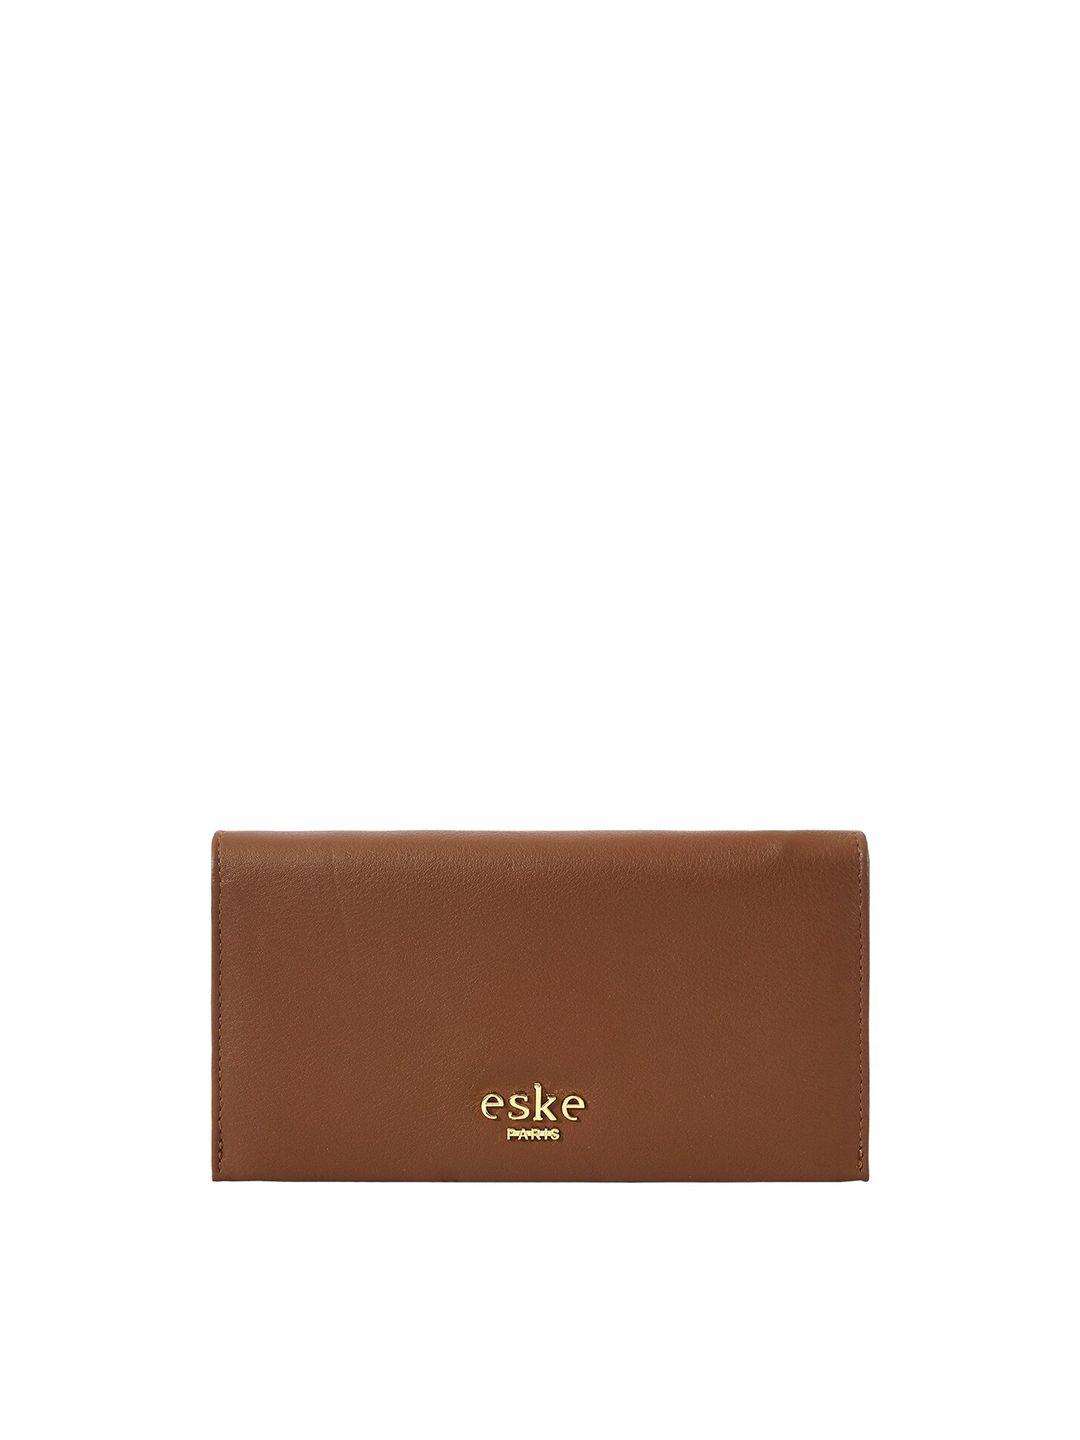 eske women leather two fold wallet